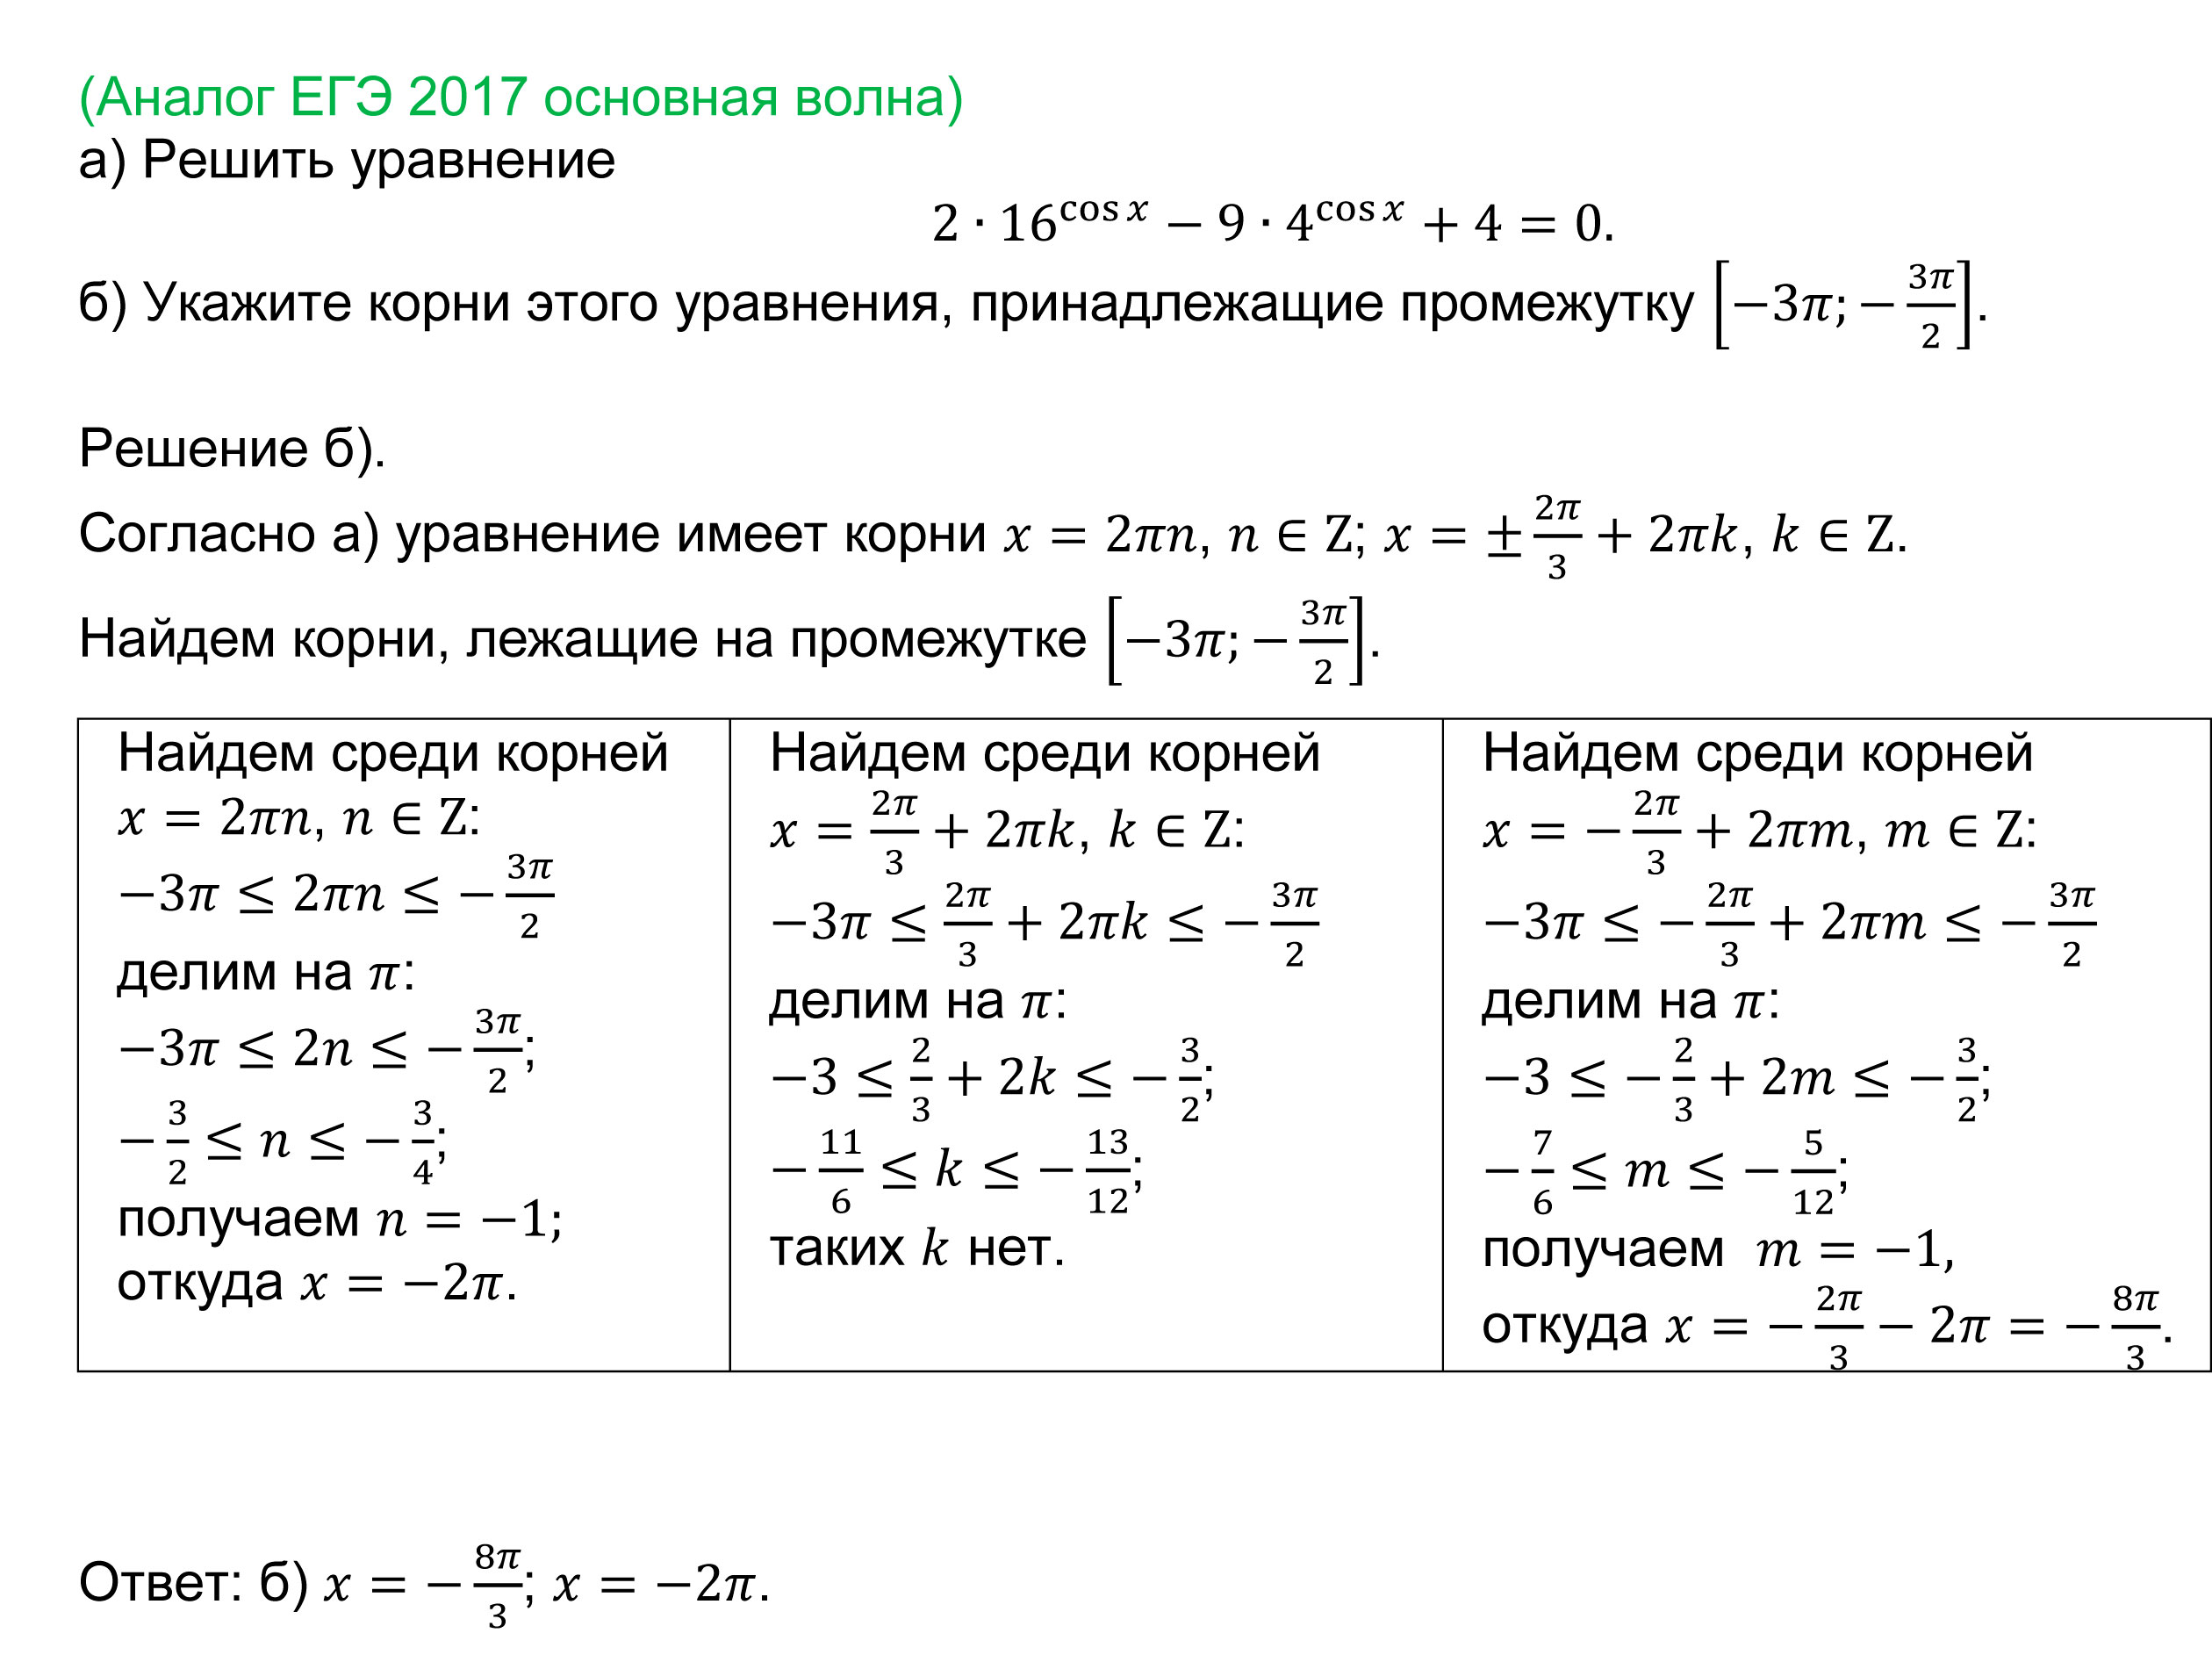 Показательные уравнения, формулы и примеры